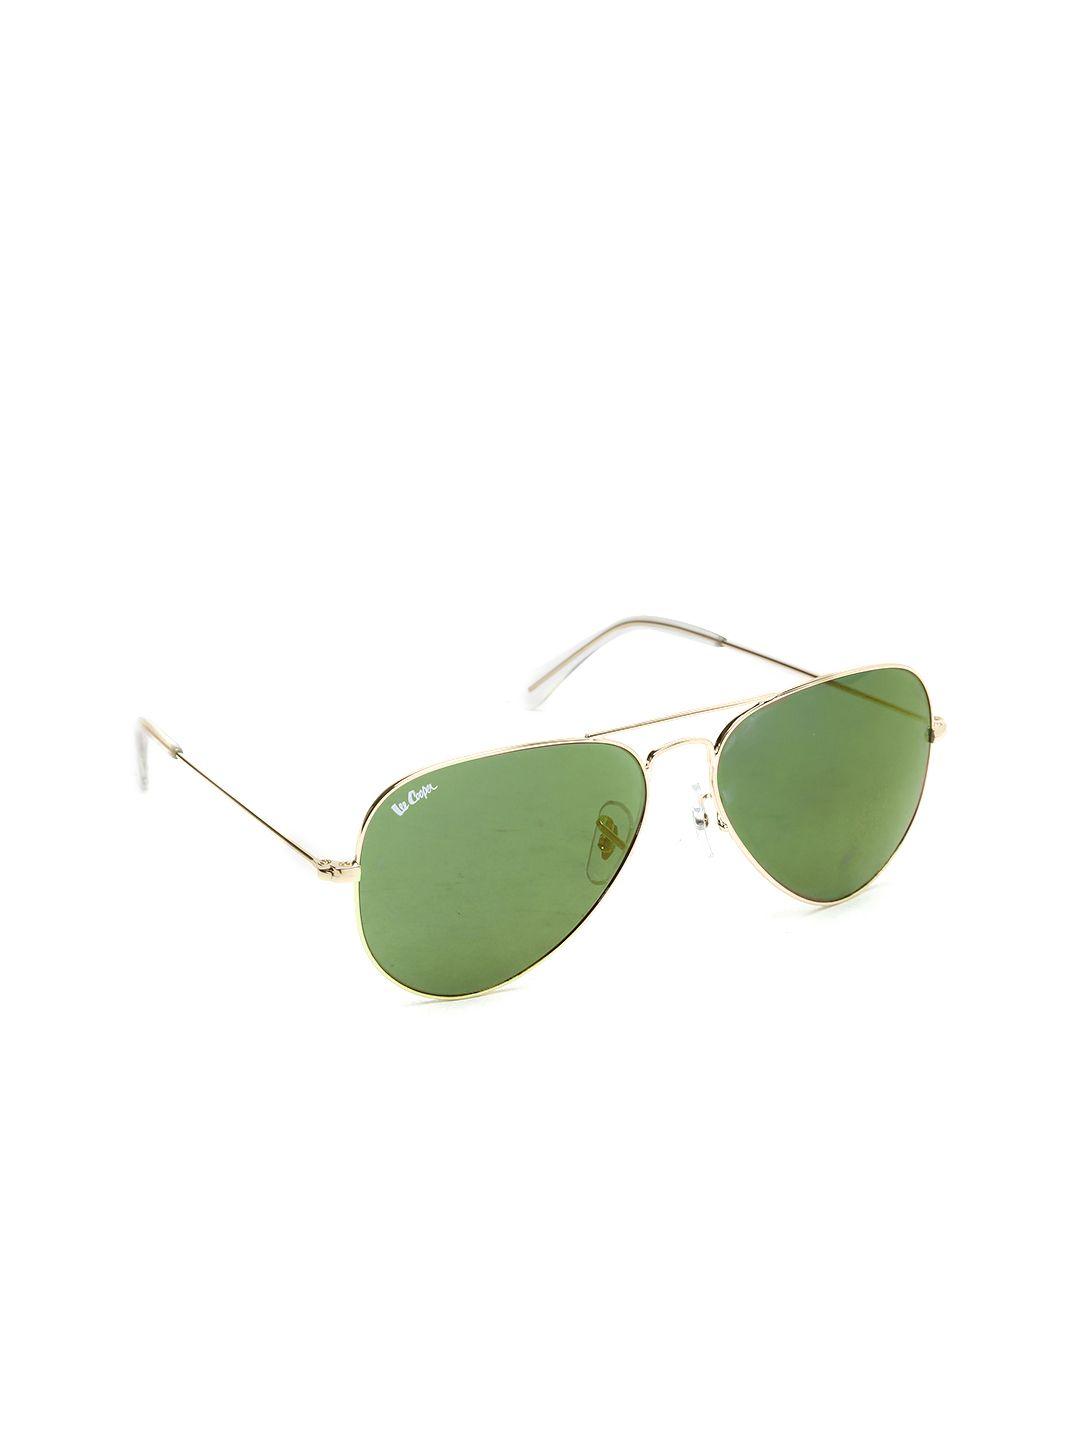 lee cooper unisex mirrored polarised aviator sunglasses lc9000